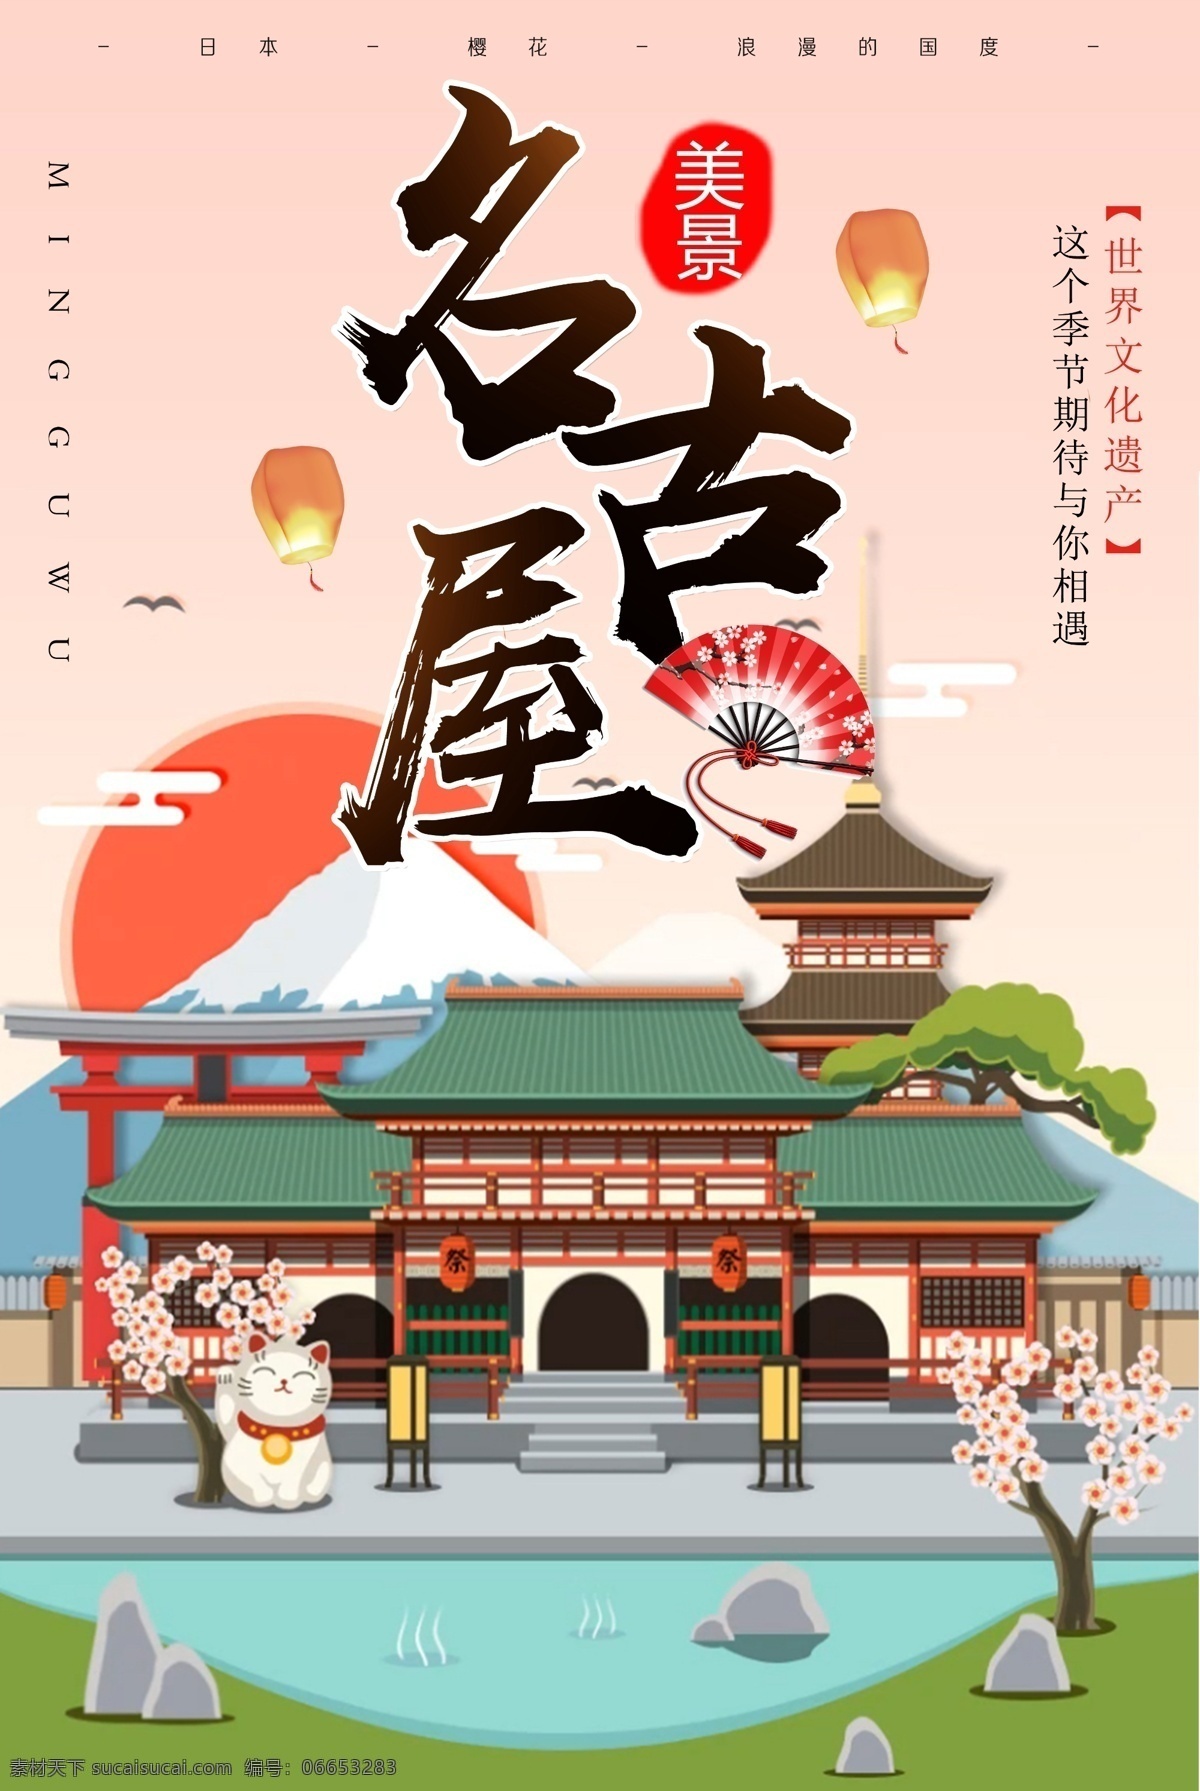 日本 名古屋 风情 旅游 海报 日本海报 旅游海报 和风旅游海报 日本旅游 日式 和风 橙色 橙色创意海报 浅黄色 创意 季节性